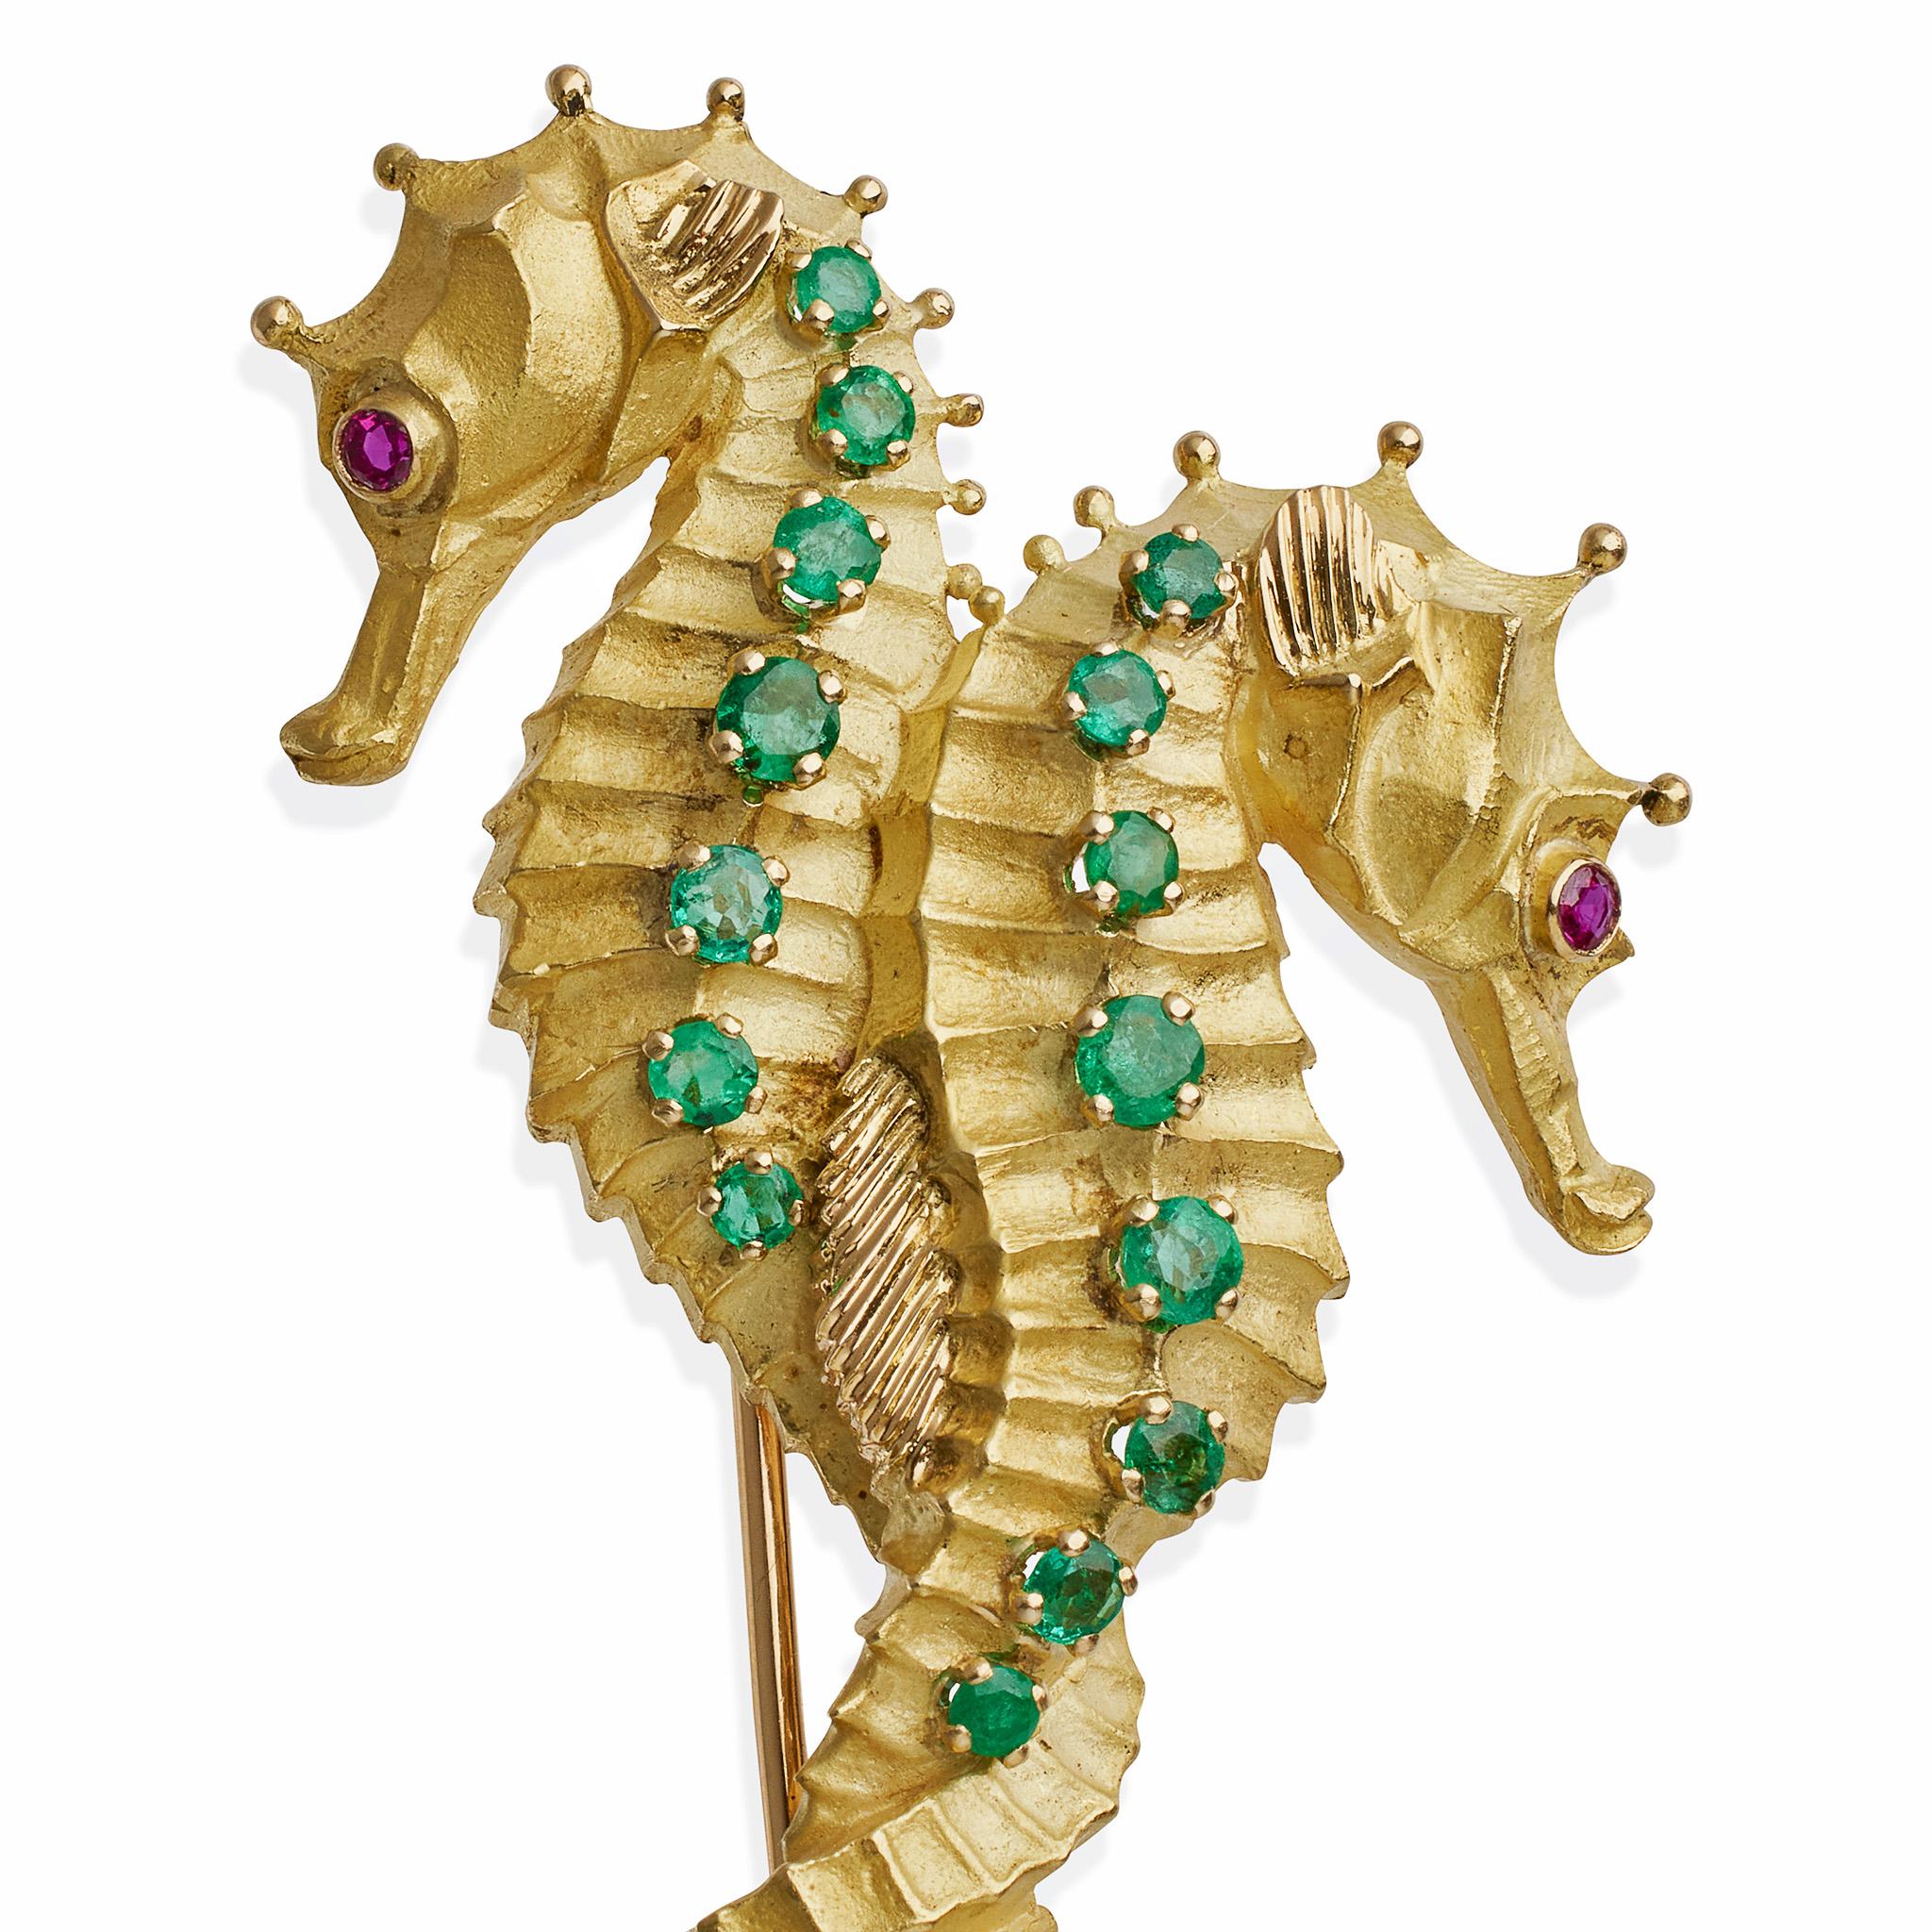 Créée à Paris pour Tiffany & Co. par la firme de Geroges Lenfant dans les années 1960-1970, cette broche à clip à double hippocampe est composée d'or 18 carats, d'émeraudes et de rubis. Conçus comme des hippocampes aux queues entrelacées, leurs